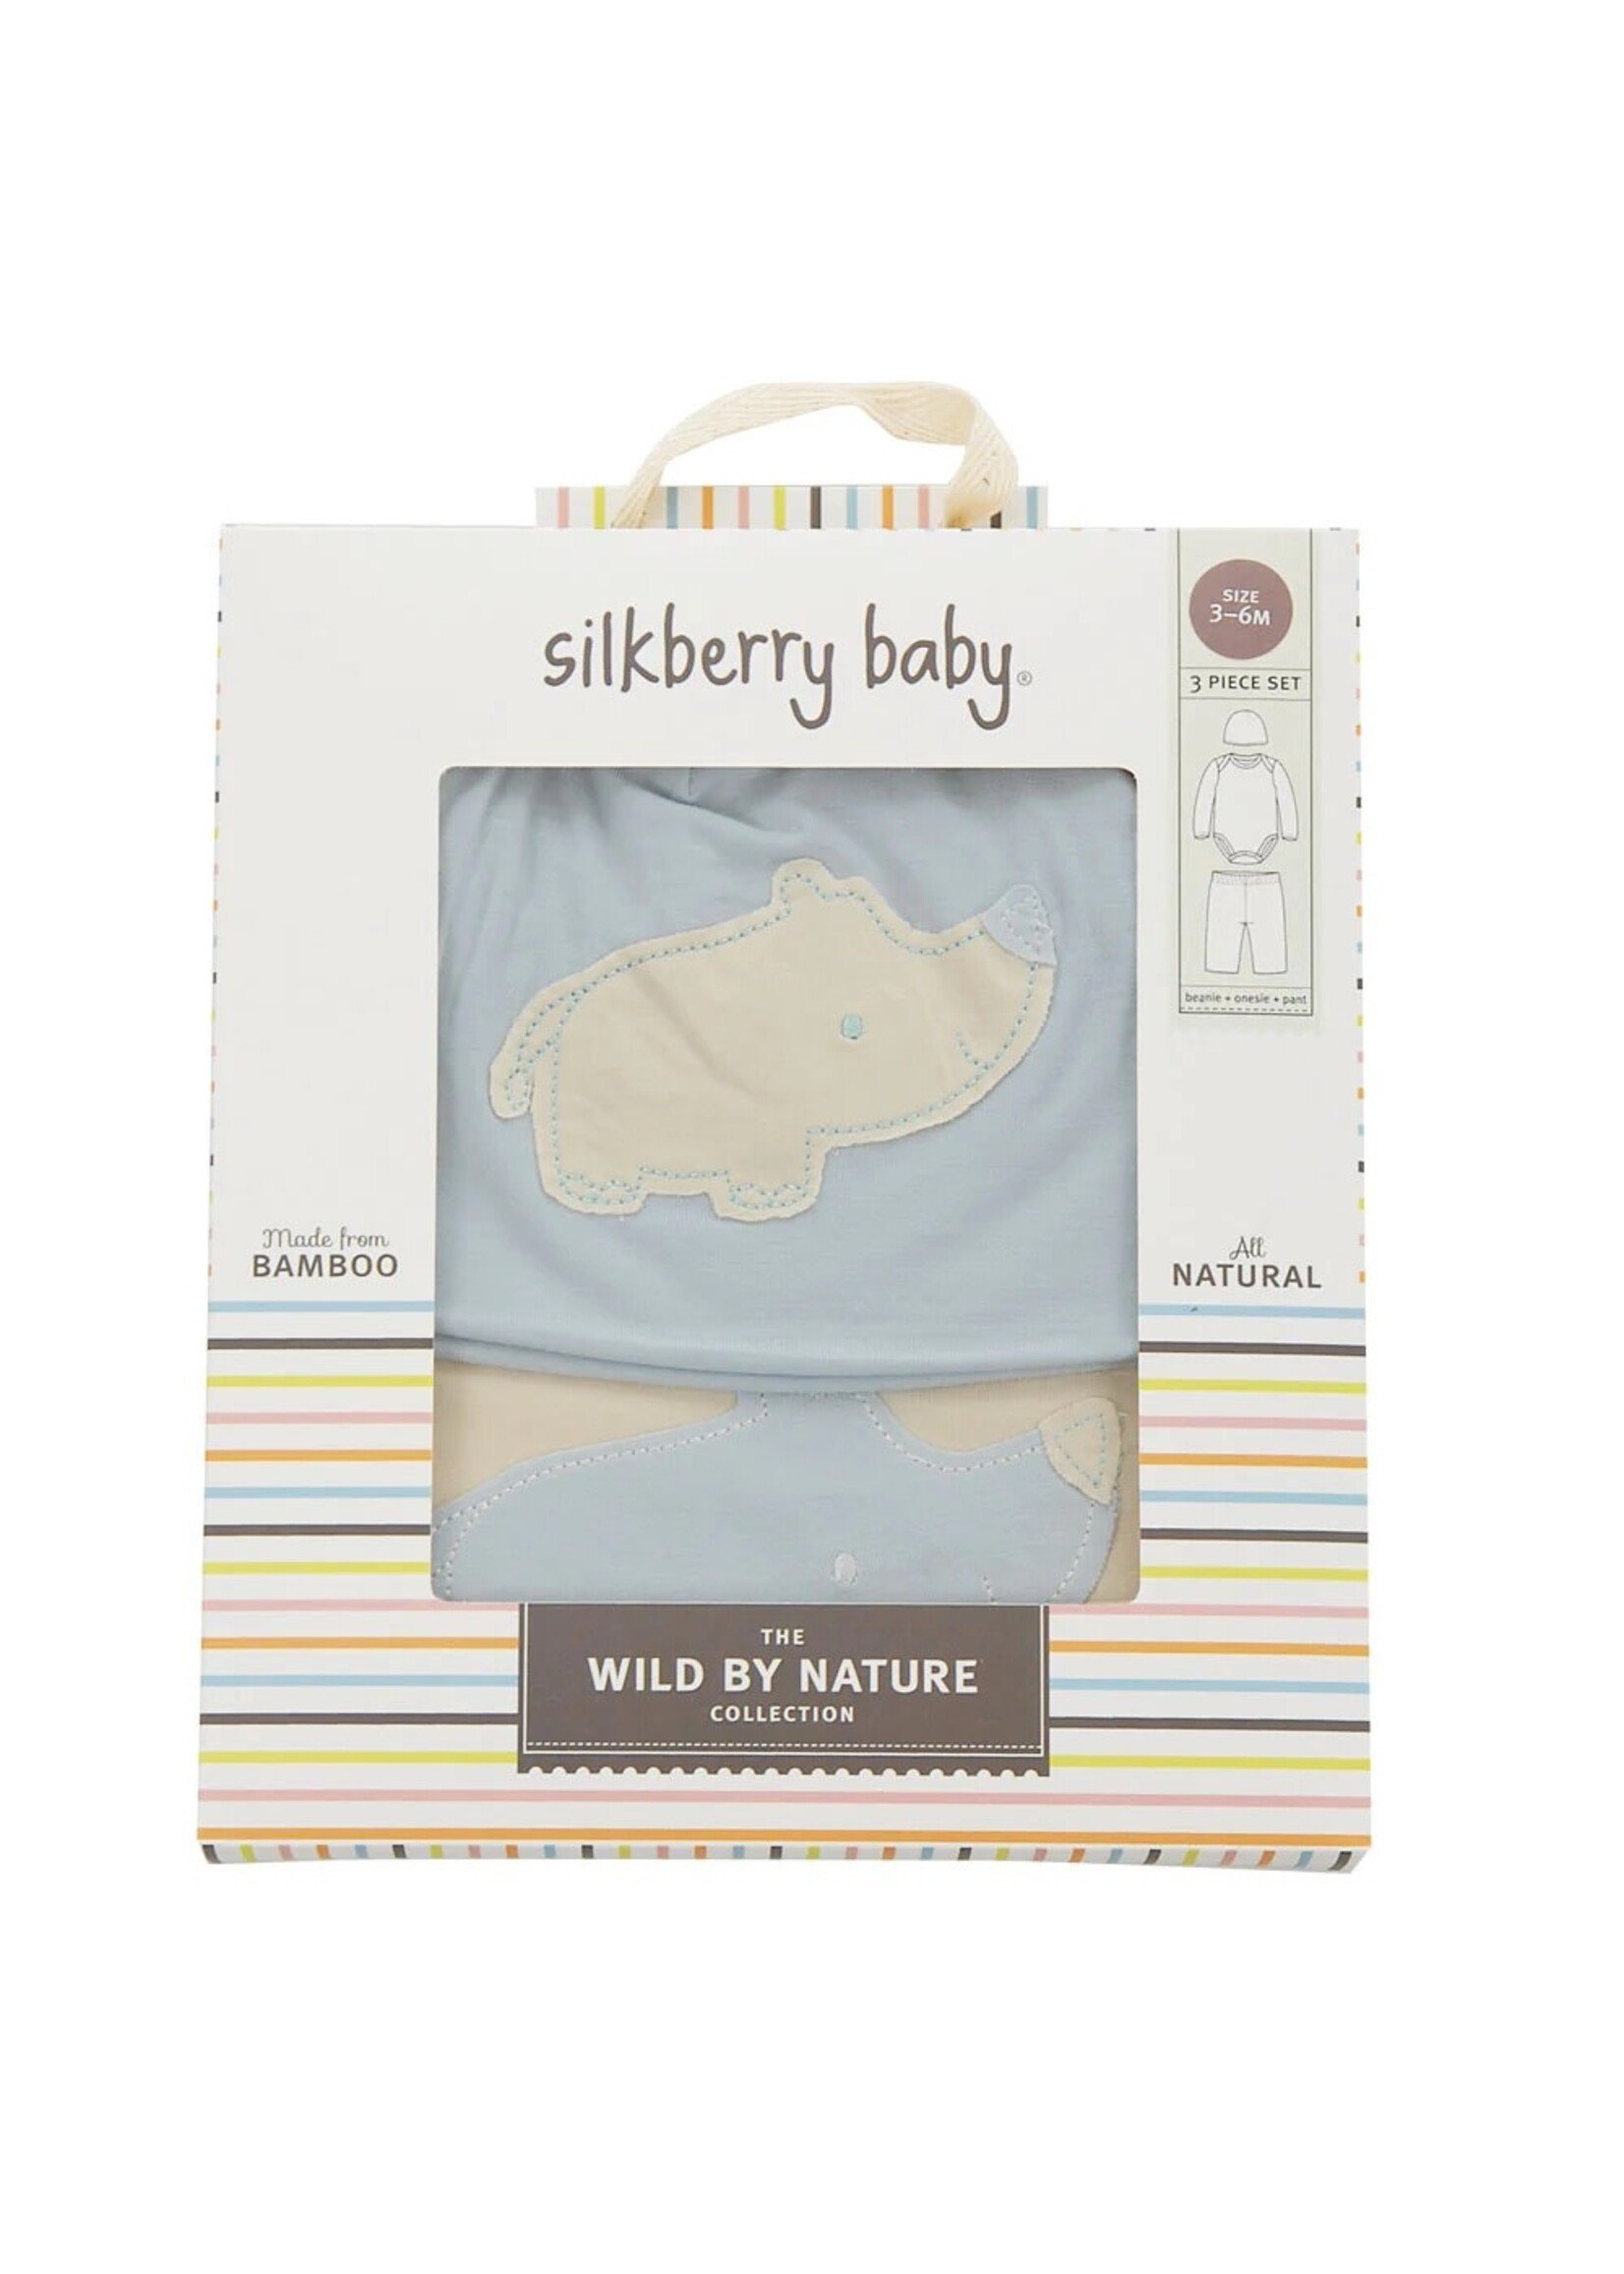 Silkberry Baby SB 3 in 1 Gift Pack Beanie Onesie Pant 4014